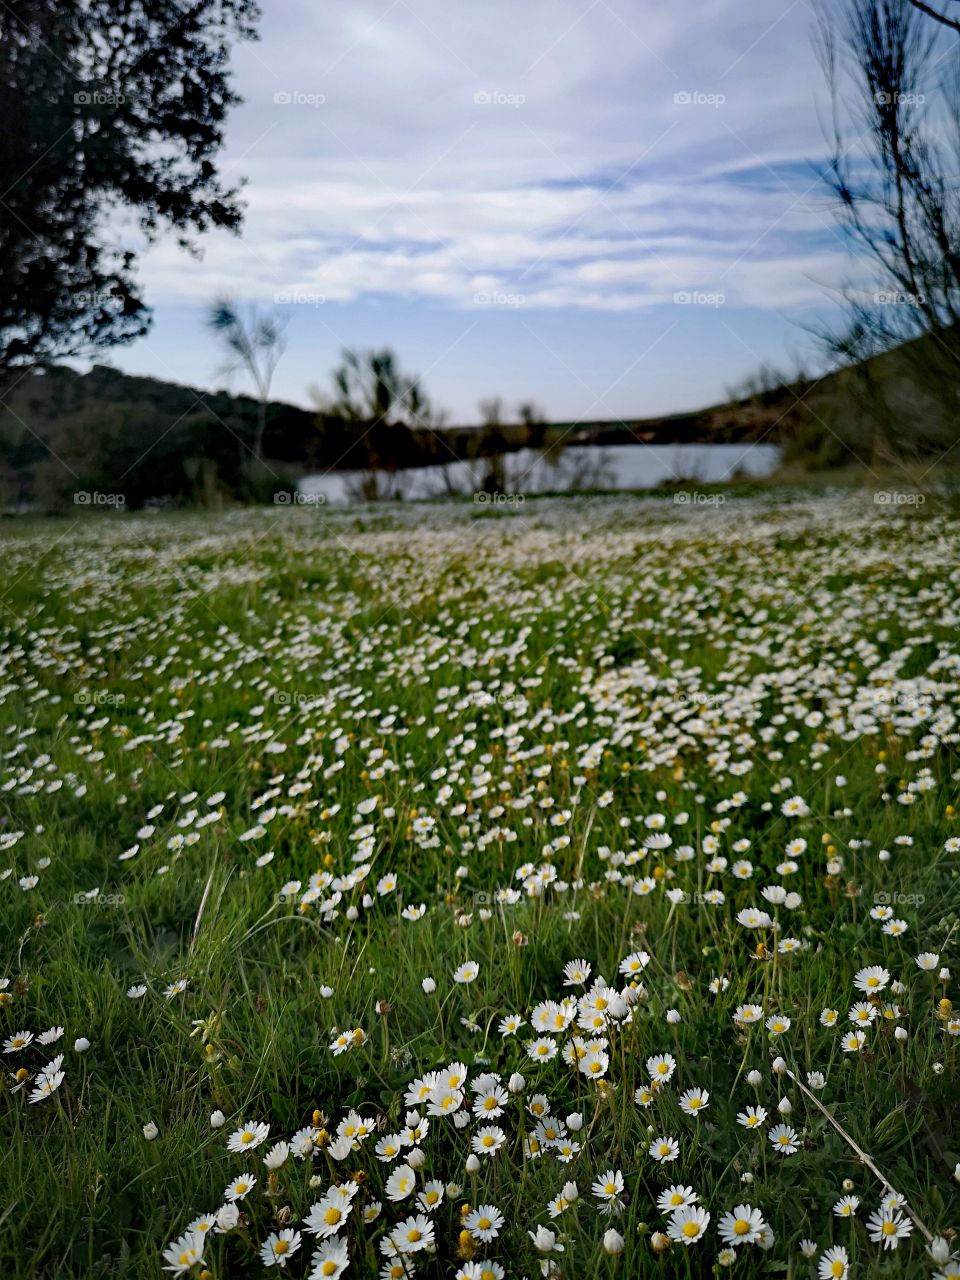 Primavera
#primavera #campo #naturaleza #2019 #fotografia